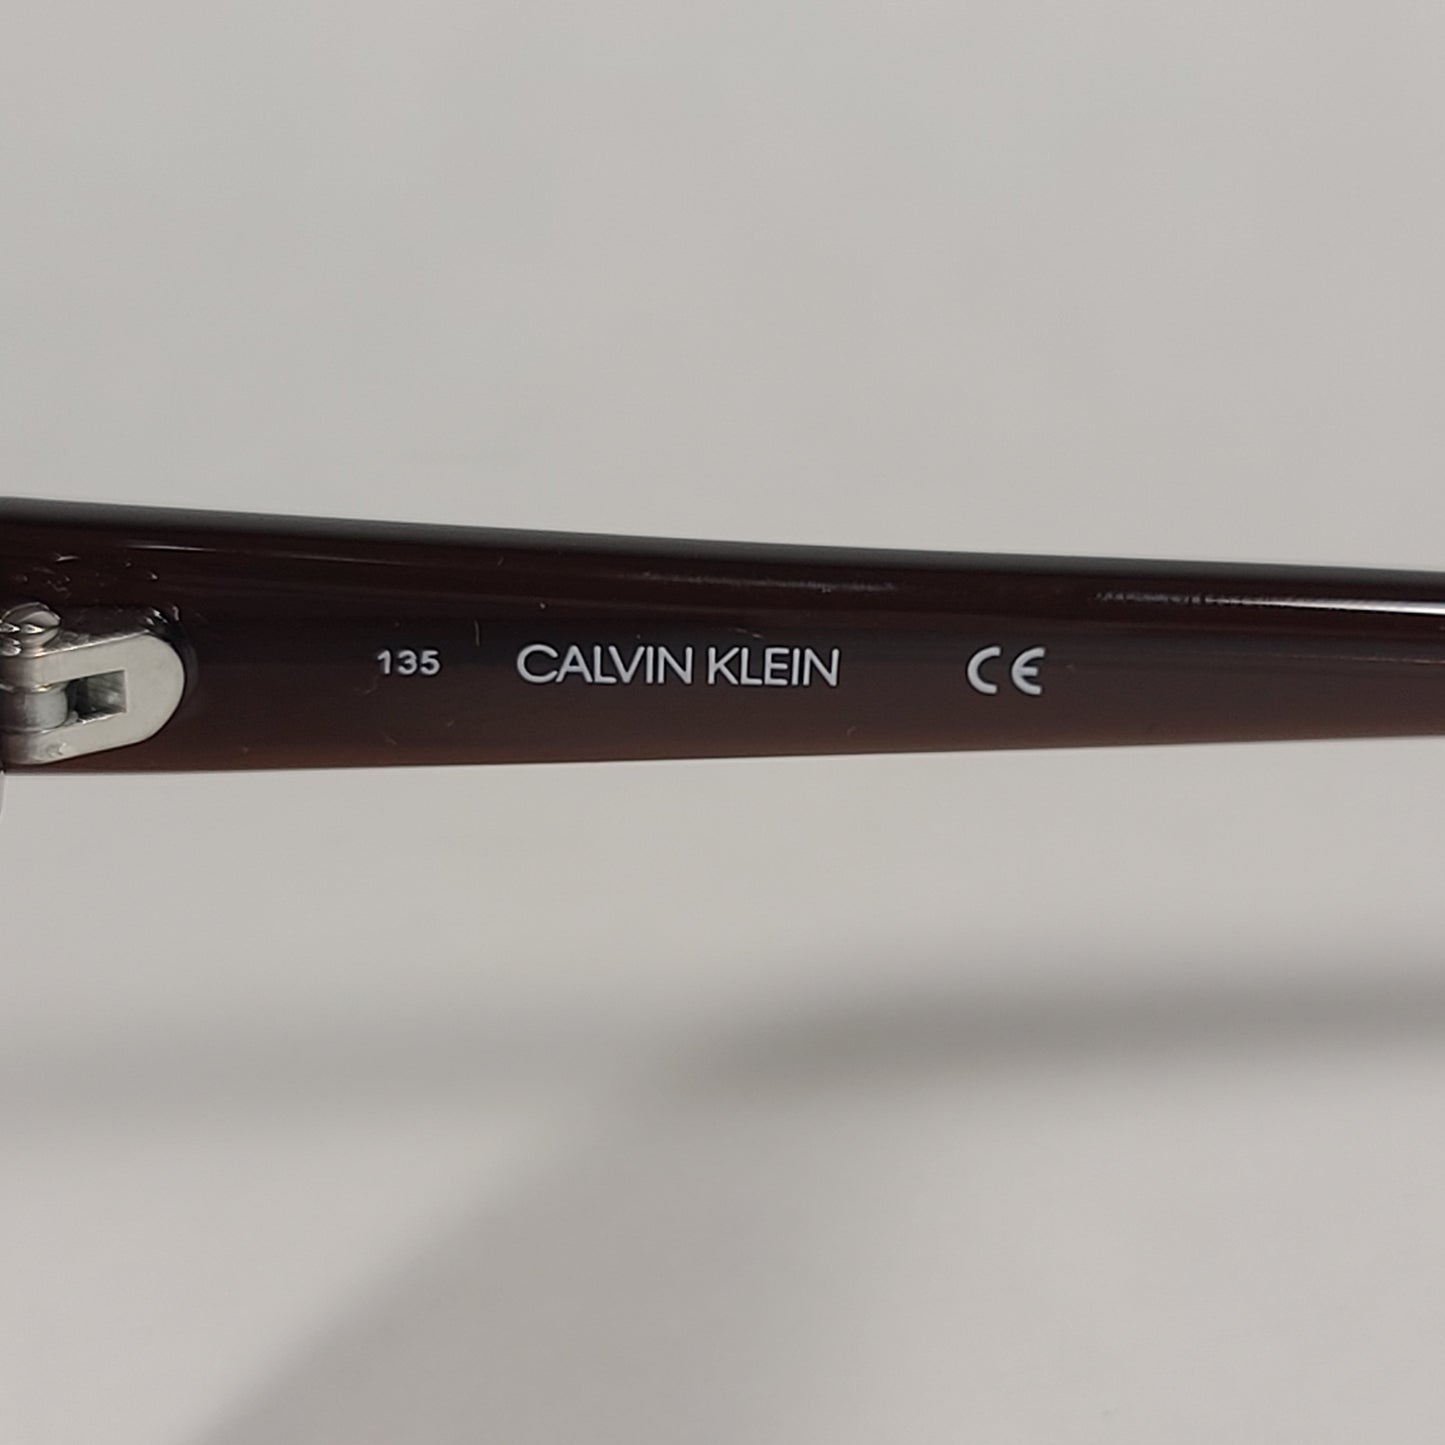 Calvin Klein Cat Eye Sunglasses CK19536S 210 Brown Frame Gradient Lens - Sunglasses